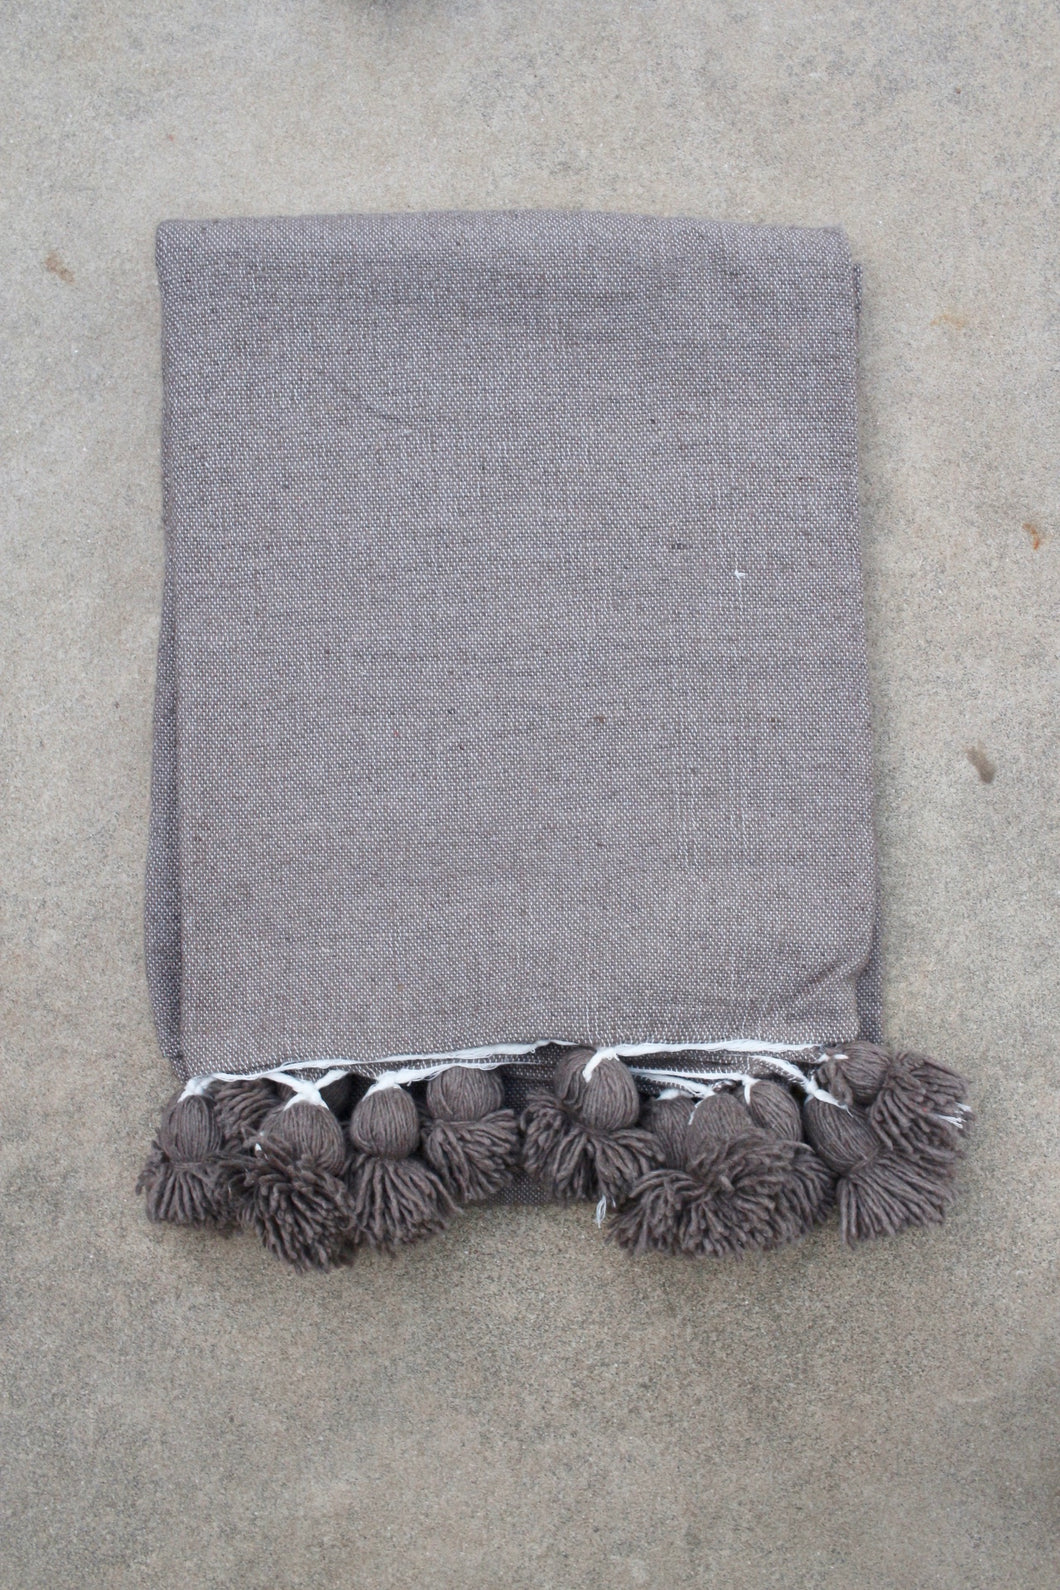 Pom Pom Blanket - Solid Warm Charcoal